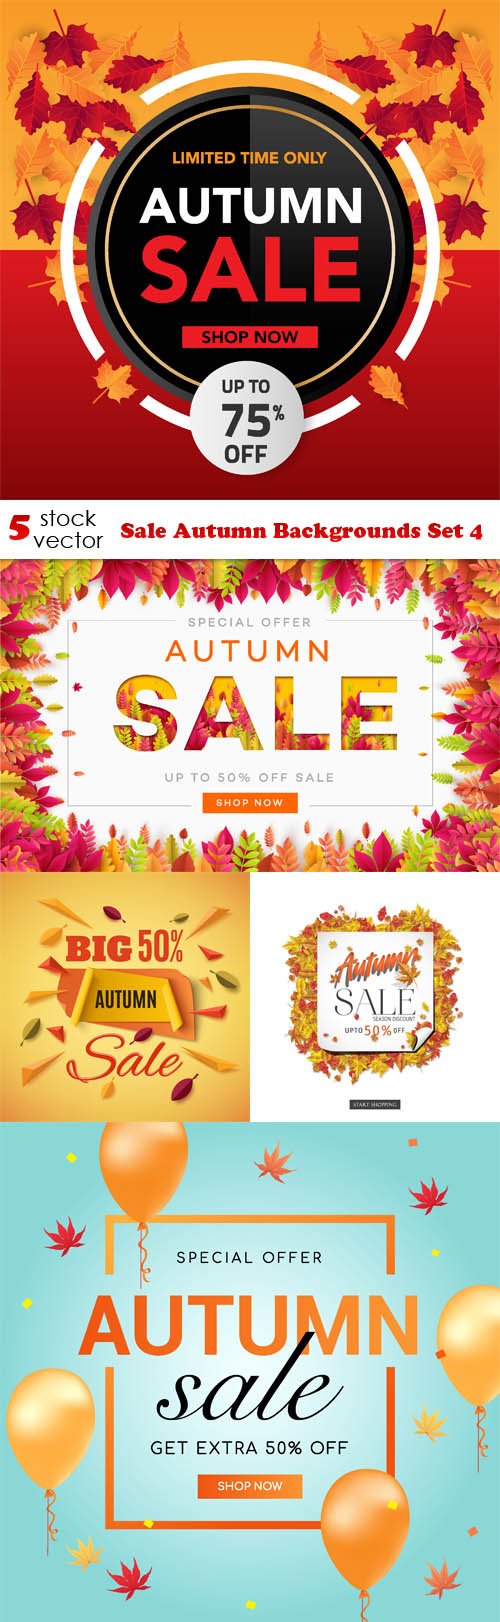 Vectors - Sale Autumn Backgrounds Set 4